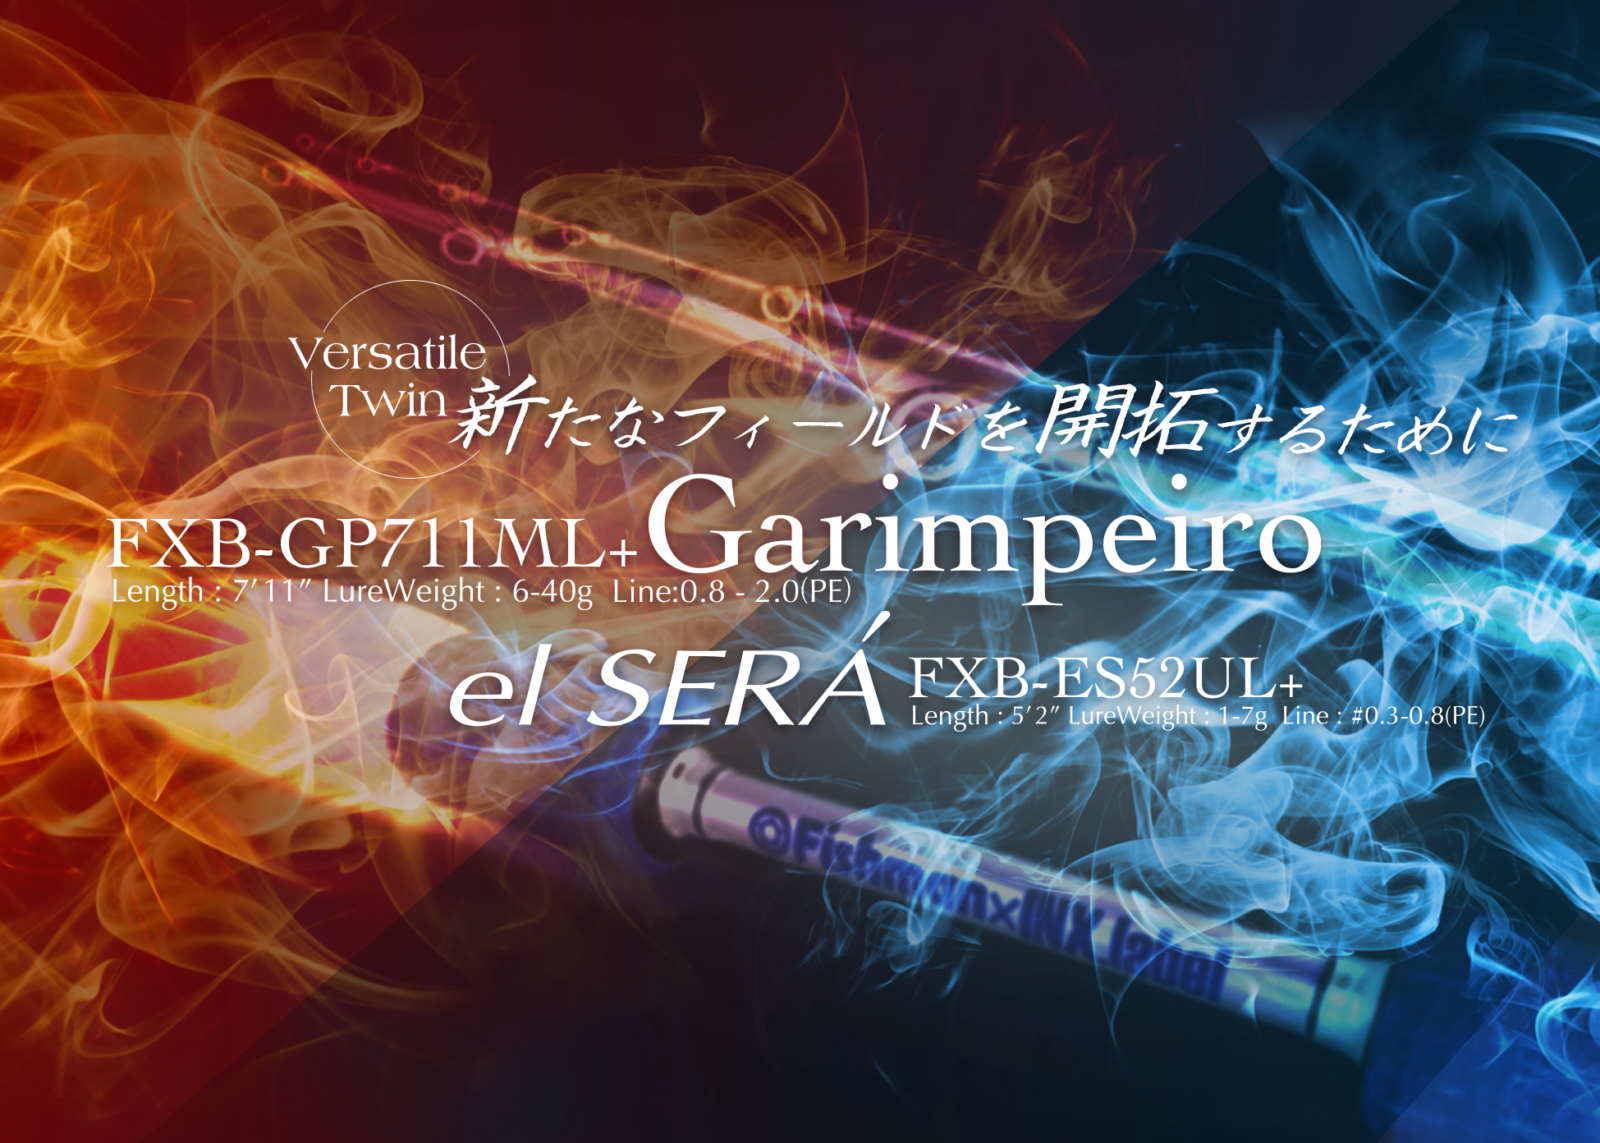 Garimpeiro & el SERA